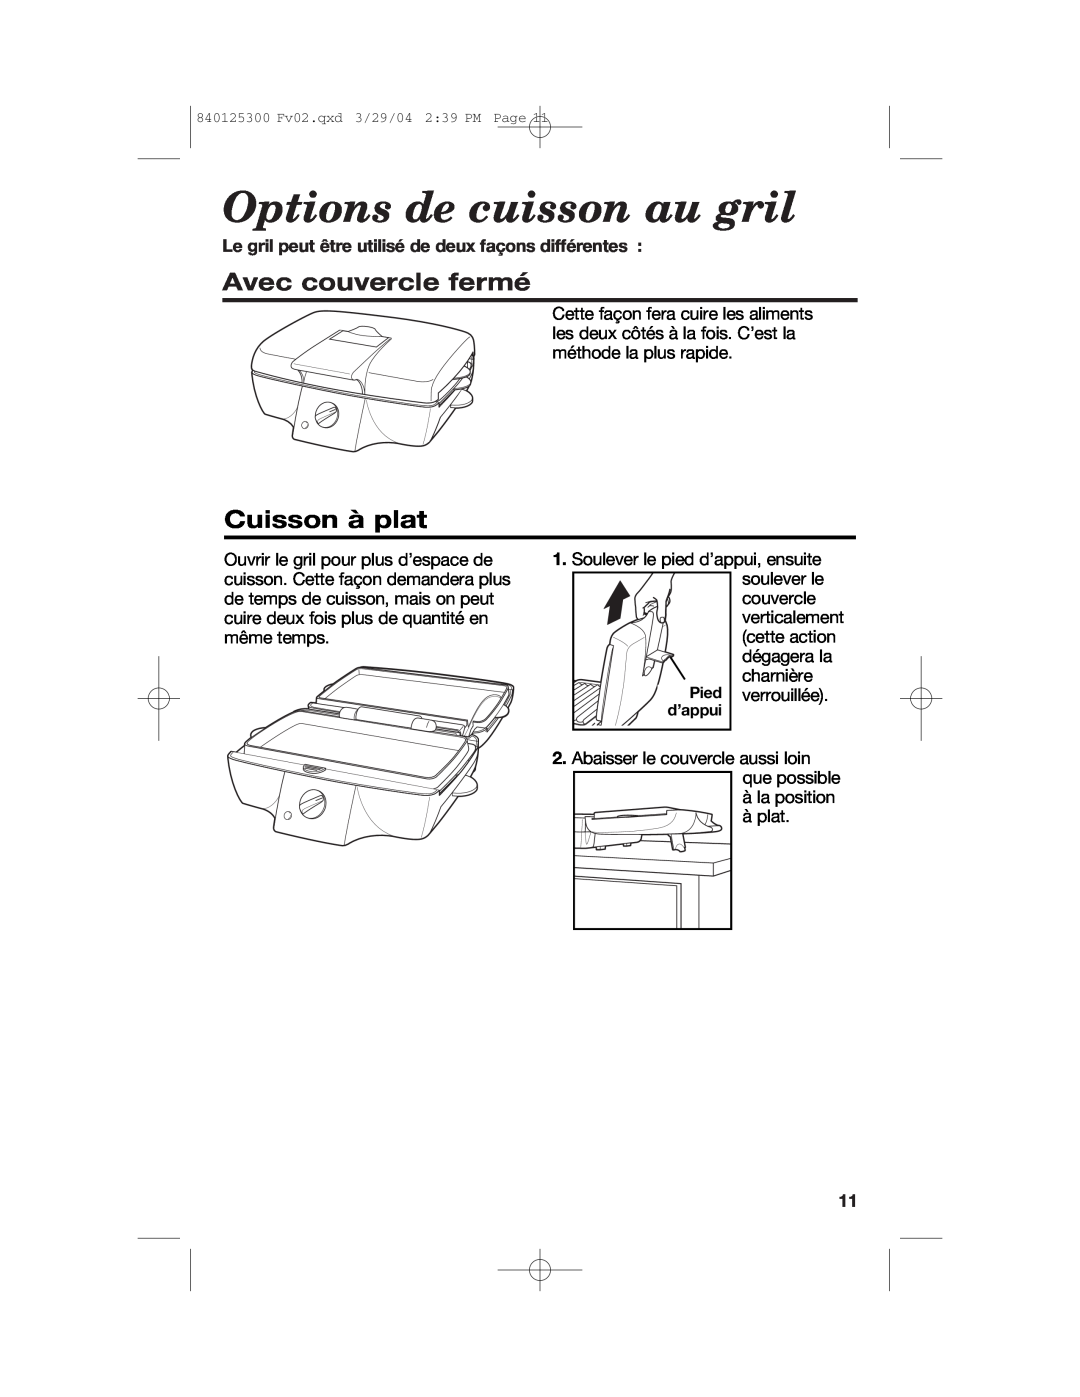 Hamilton Beach 25295 manual Options de cuisson au gril, Avec couvercle fermé, Cuisson à plat 